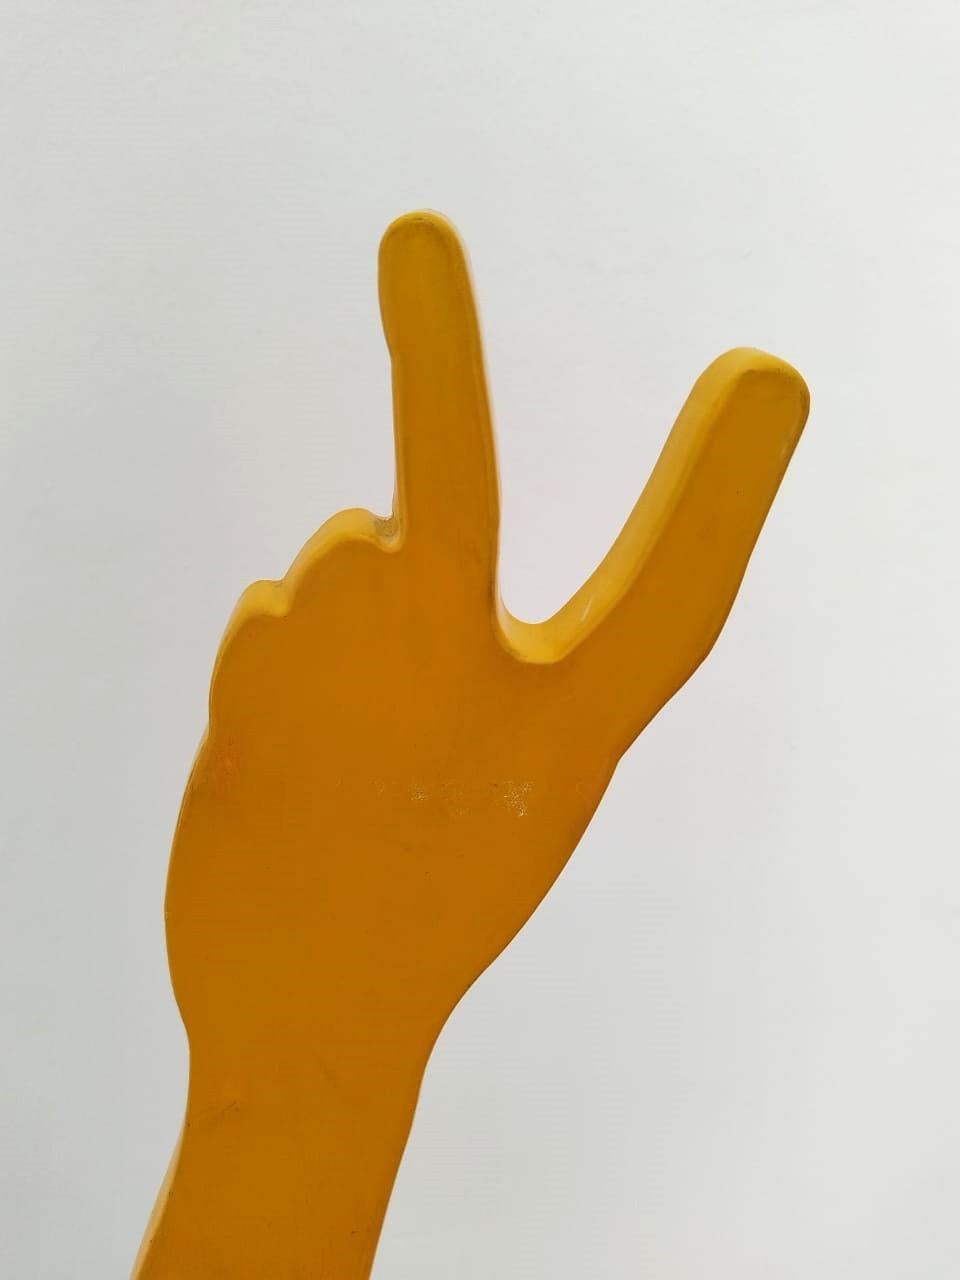 Eine Skulptur aus gelb pulverbeschichtetem Baustahl in limitierter Auflage auf einem schwarzen Stahlsockel. Die Skulptur ist typisch für Uwe Pfaffs augenzwinkernde Herangehensweise und stellt einen menschlichen Arm dar, der ein Friedenszeichen